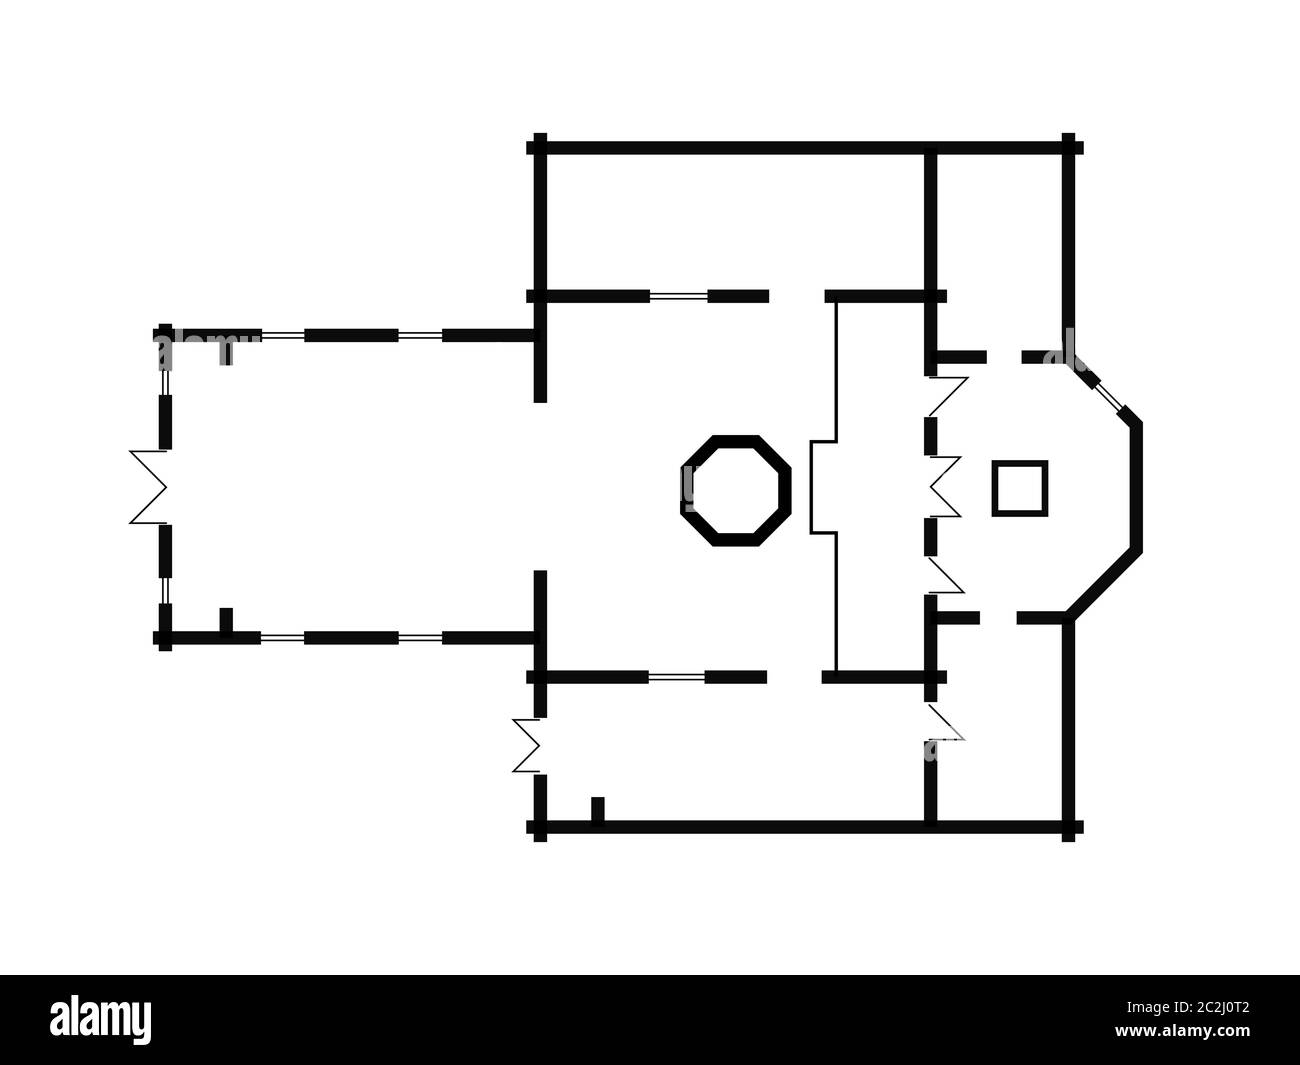 Architektonischen Plan der Christlich-orthodoxen Kirche. Mittelalterliche orthodoxe Kloster, Konstruktion. Stockfoto